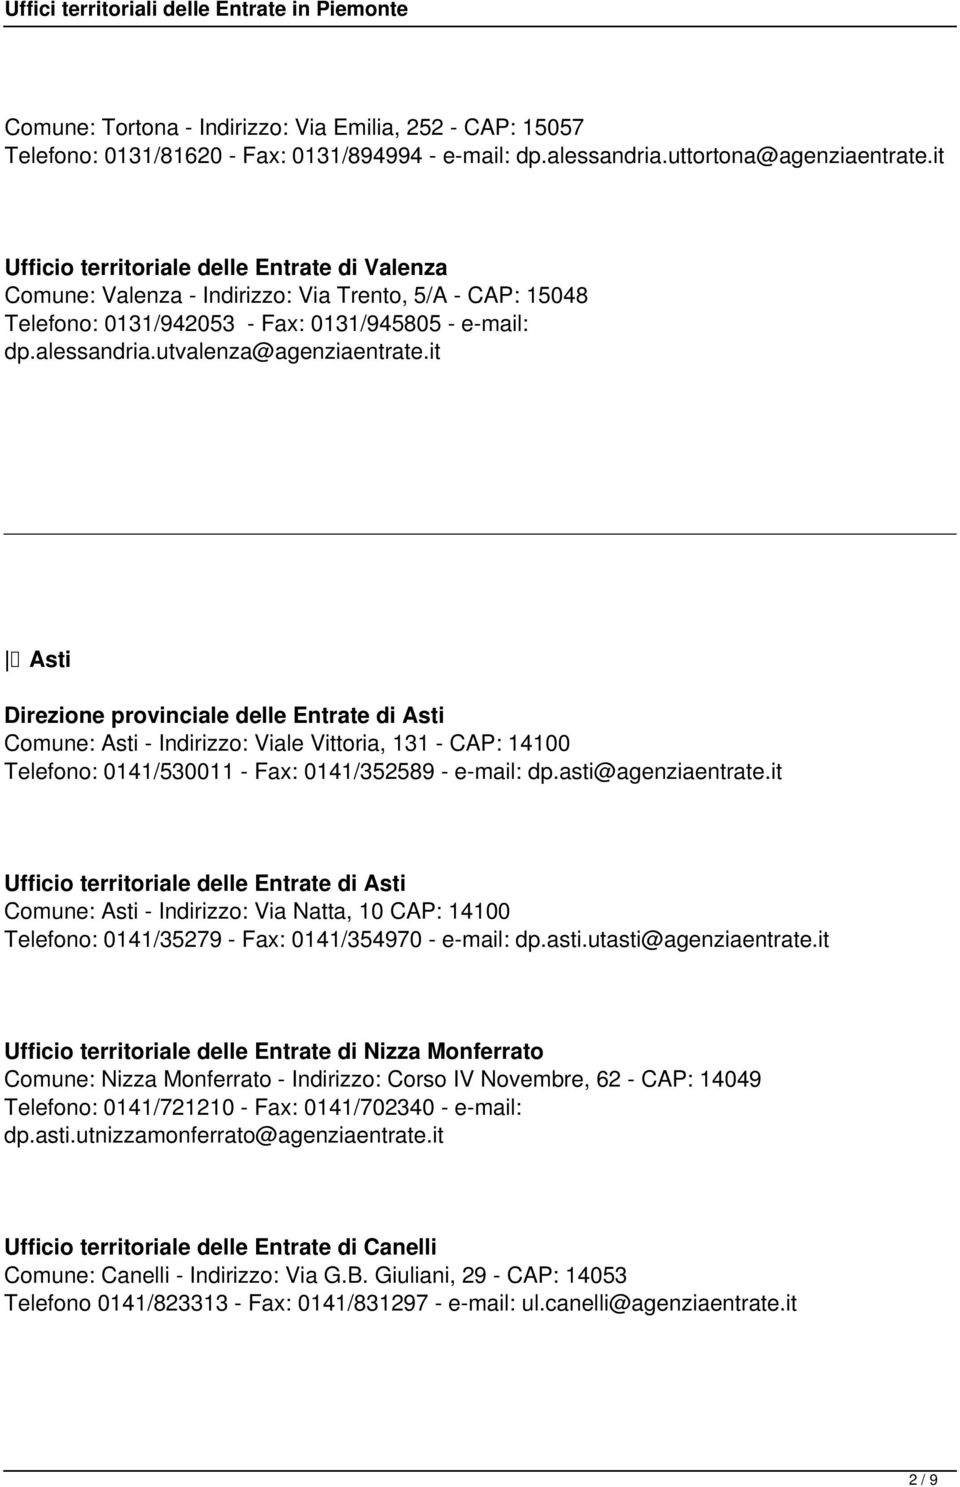 it Asti Direzione provinciale delle Entrate di Asti Comune: Asti - Indirizzo: Viale Vittoria, 131 - CAP: 14100 Telefono: 0141/530011 - Fax: 0141/352589 - e-mail: dp.asti@agenziaentrate.